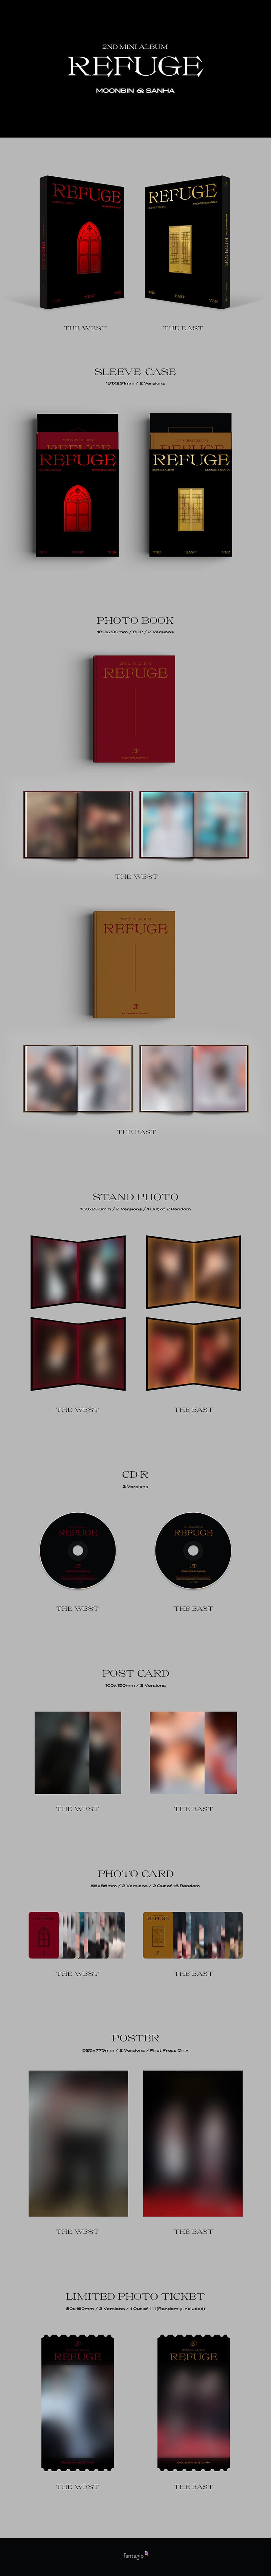 [미개봉] 문빈&산하 (Astro) / Refuge (2nd Mini Album) (The West/The East Ver. 랜덤 발송)